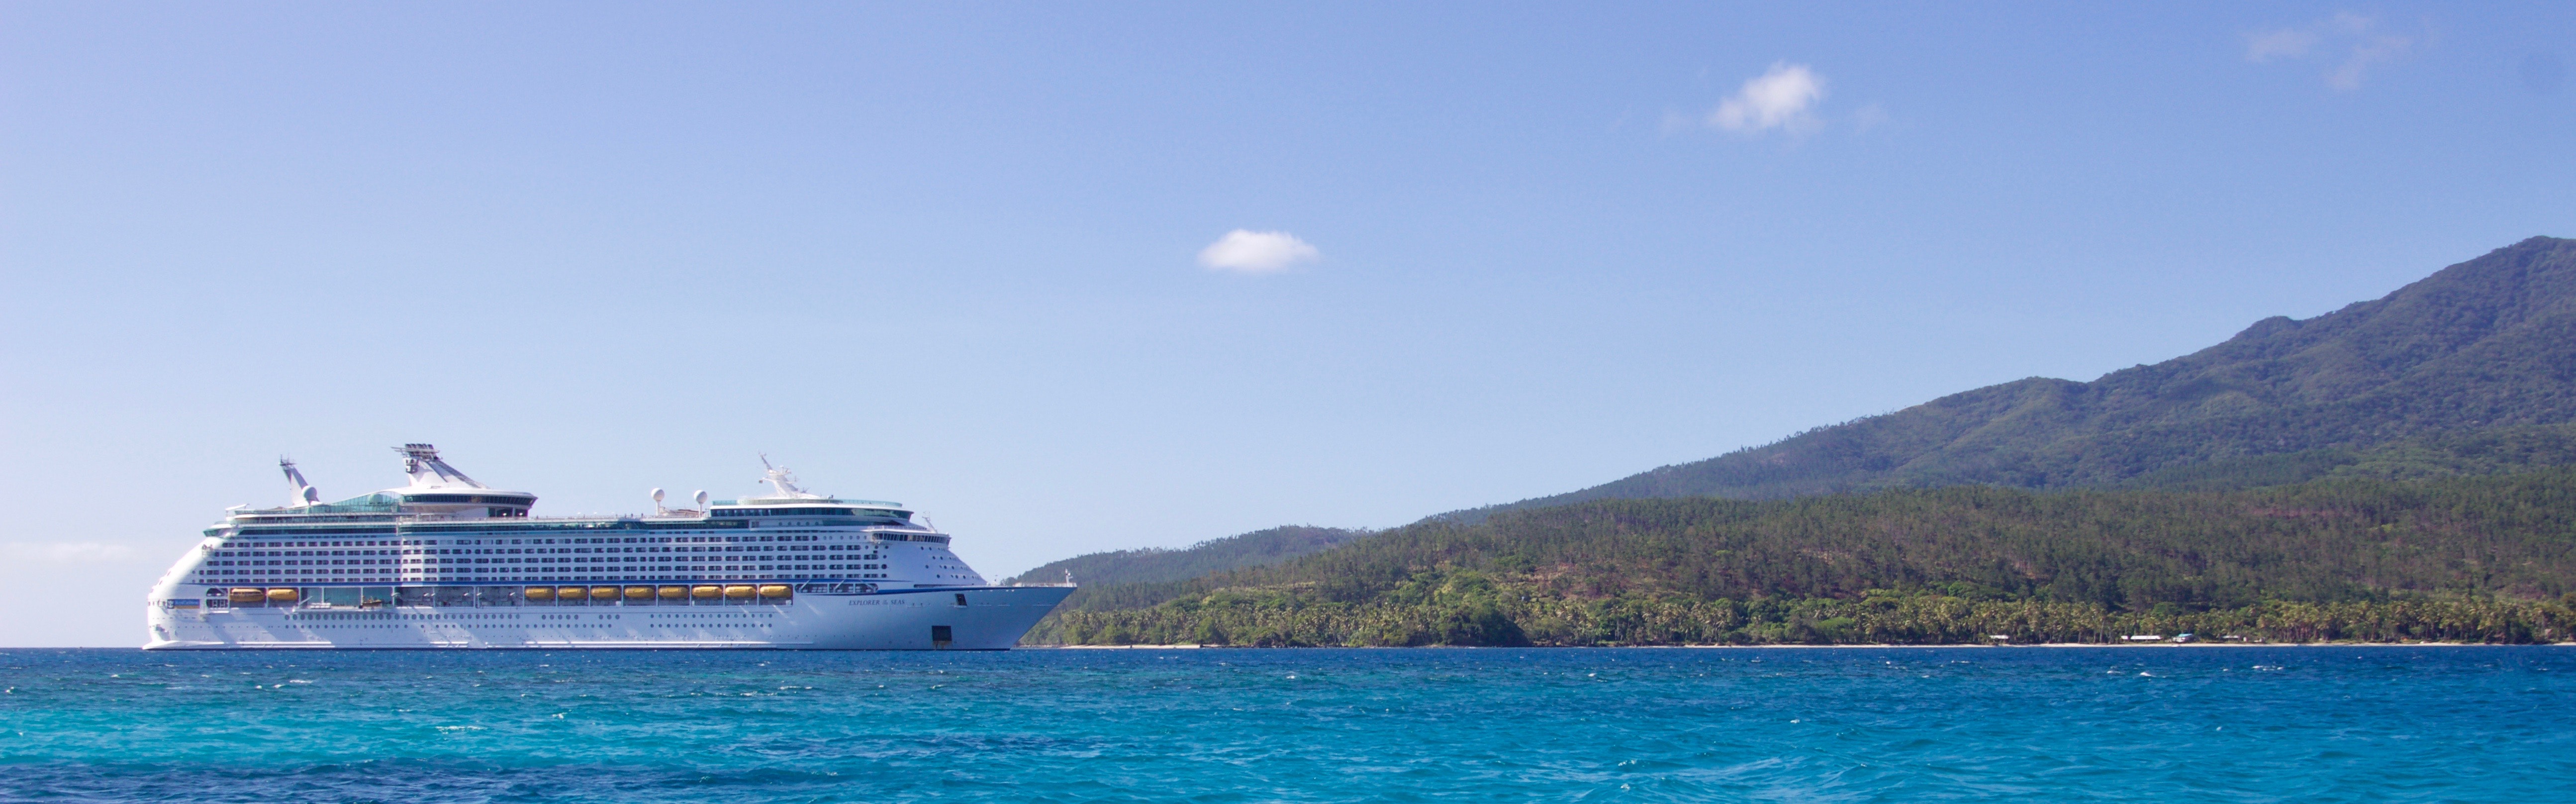 White cruise ship near island photo